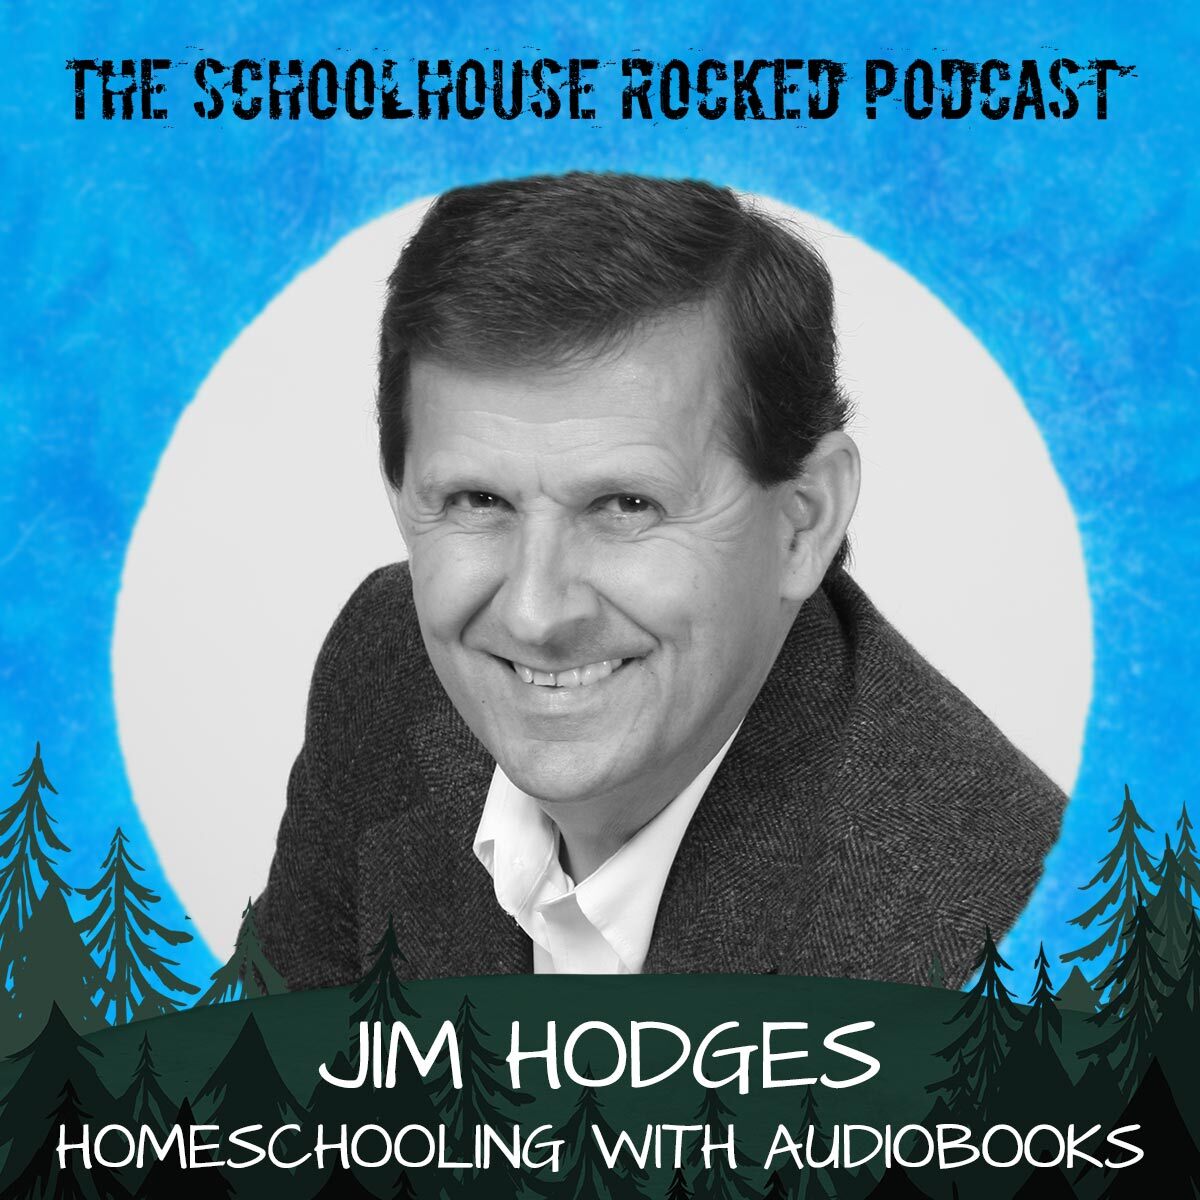 Using Audiobooks for Homeschooling